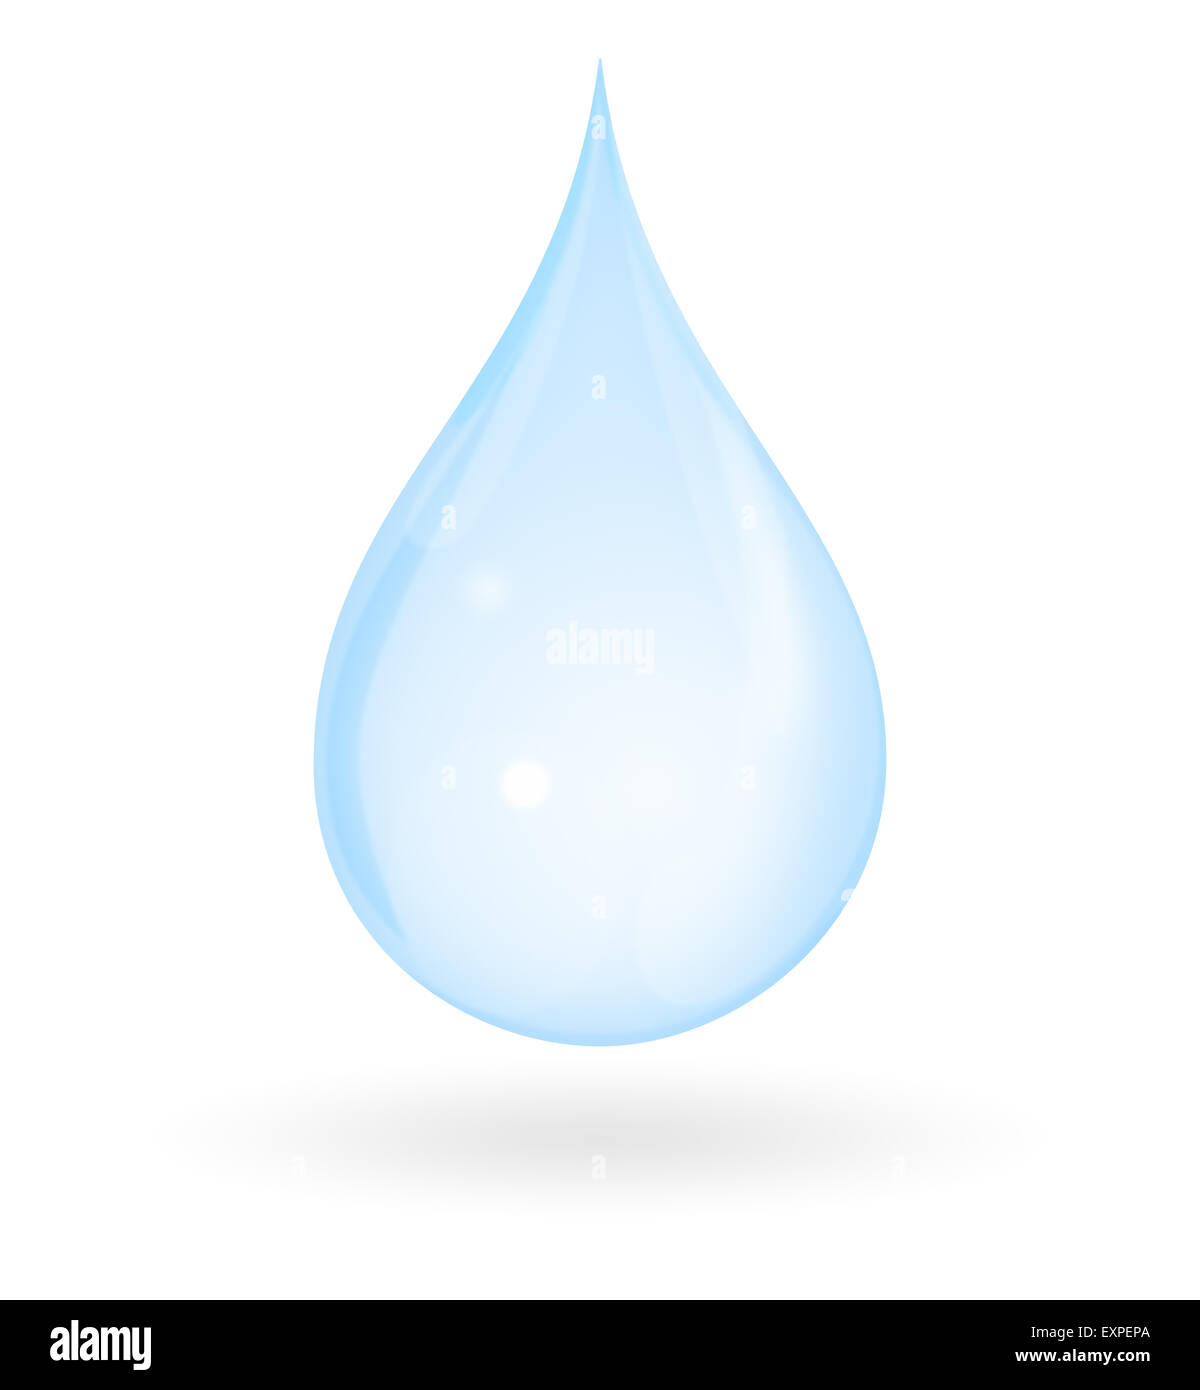 Gota de agua azul con sombra aislado sobre un fondo blanco. Representa puros, frescos, naturales e inocentes. Foto de stock